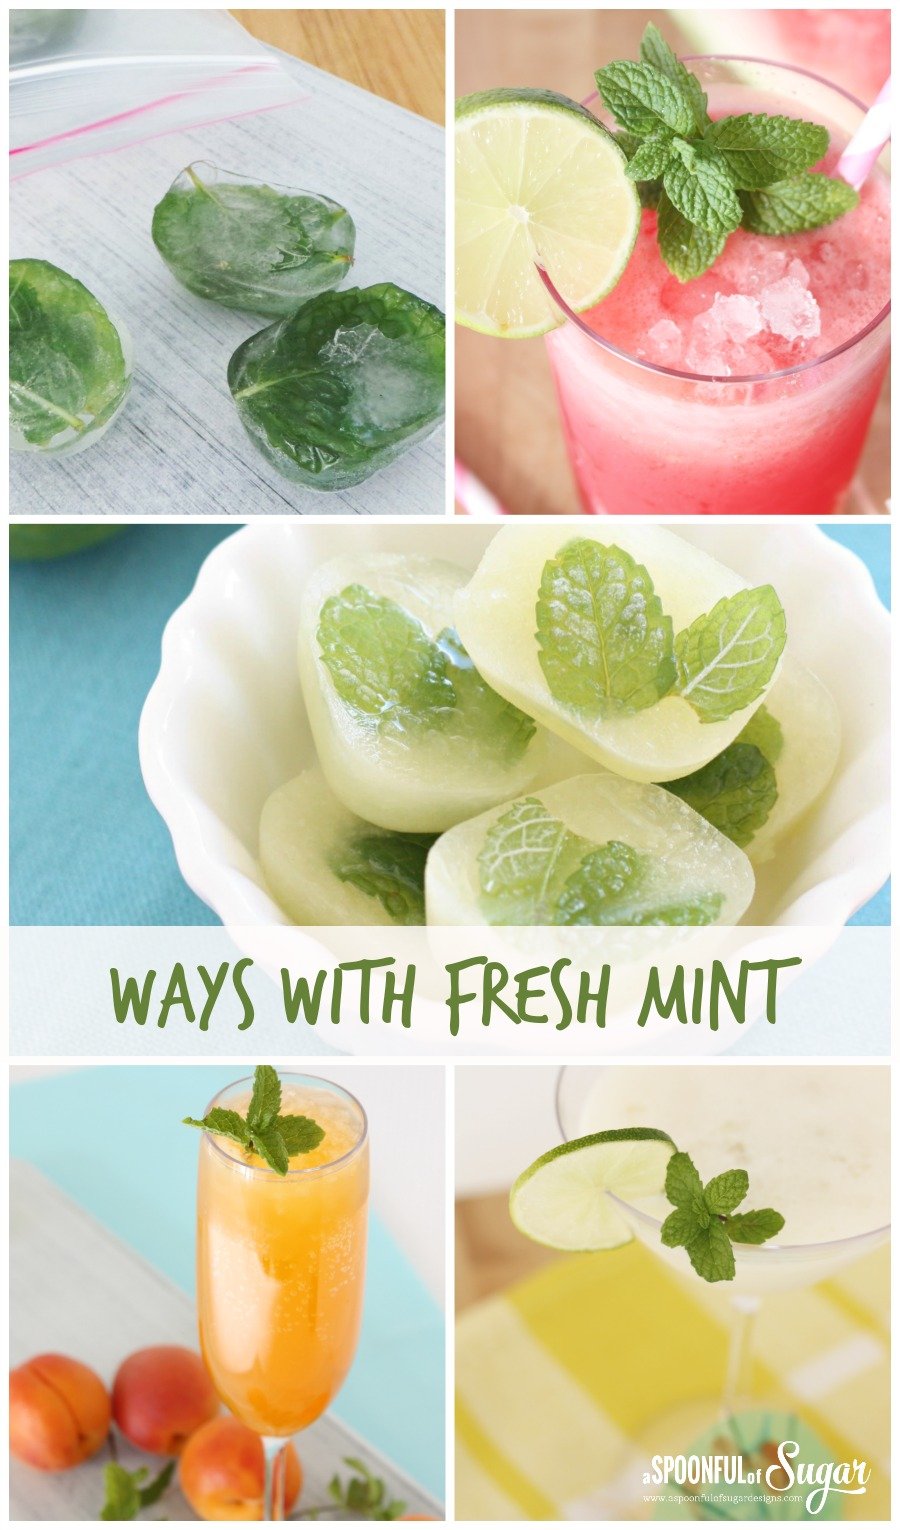 Ways with Fresh mint